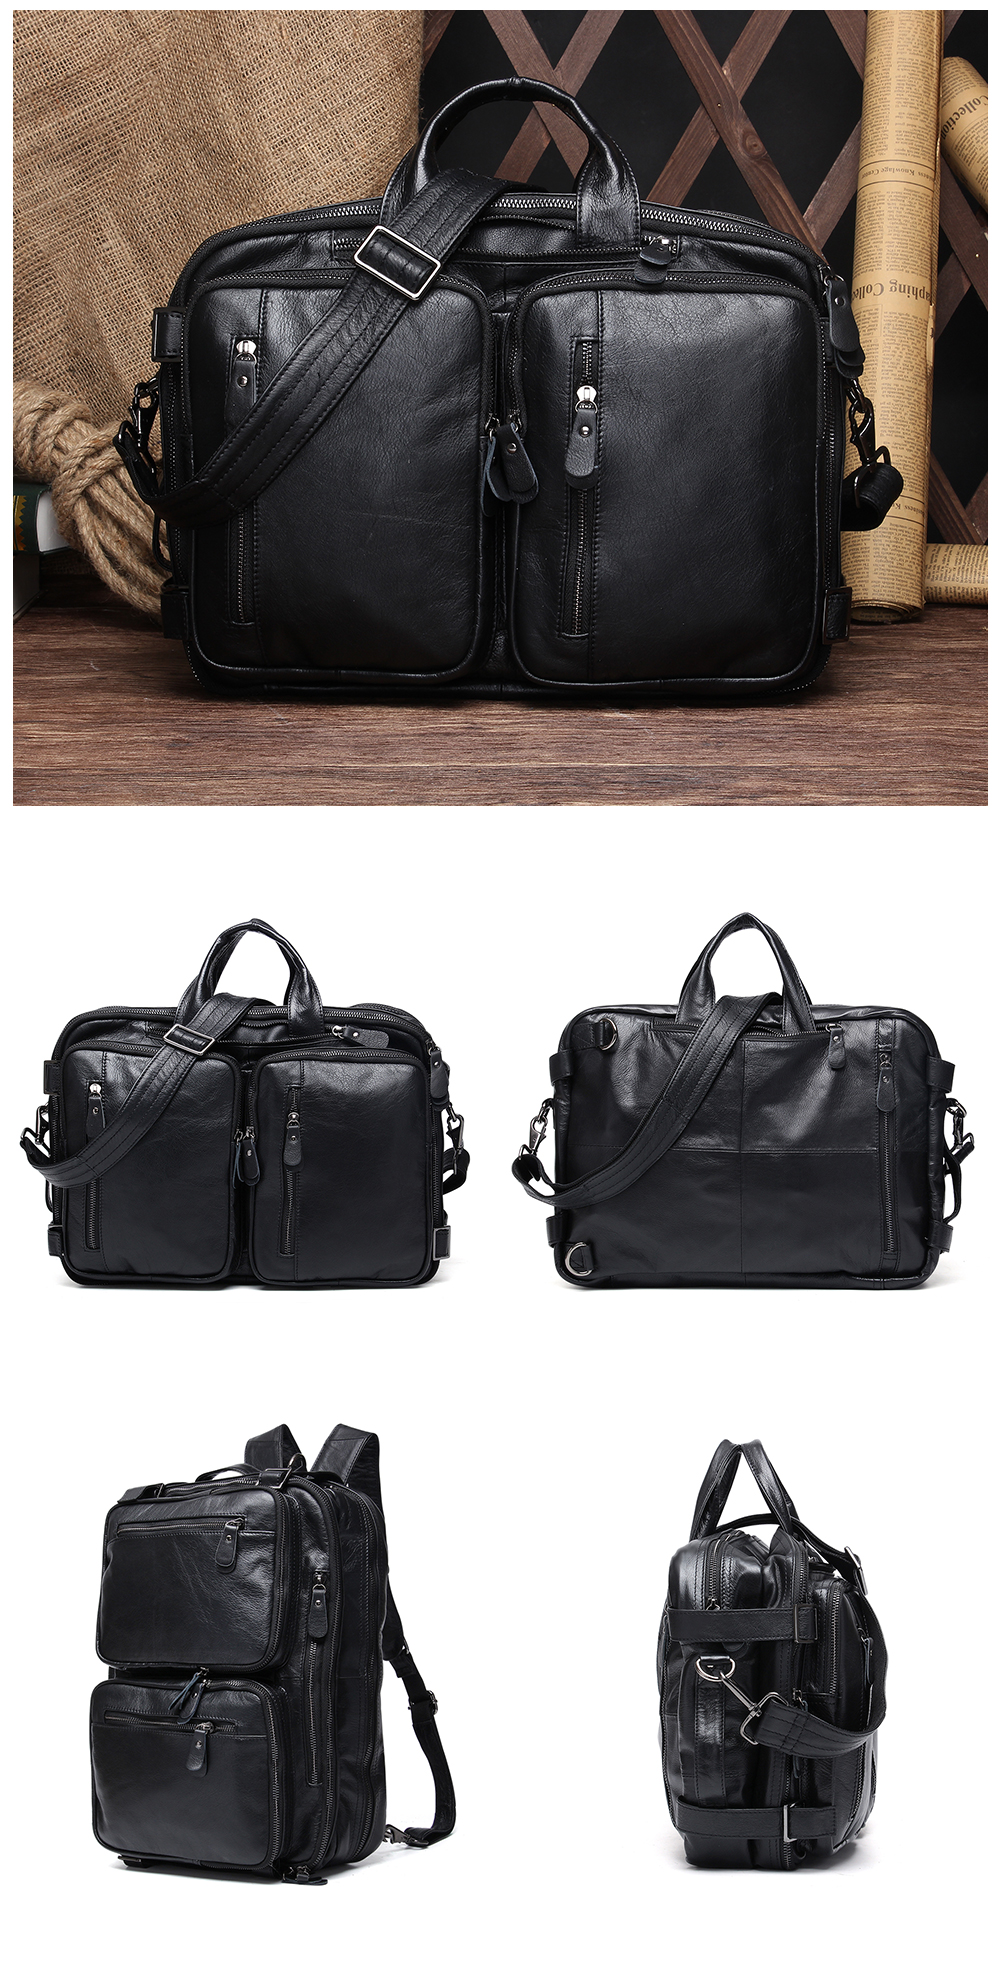 genuine-leather-vintage-men-travel-bag-duffel-bag-men-s-handbag-luggage-travel-bag-large-capacity-leather-shoulder-tote-05.jpg